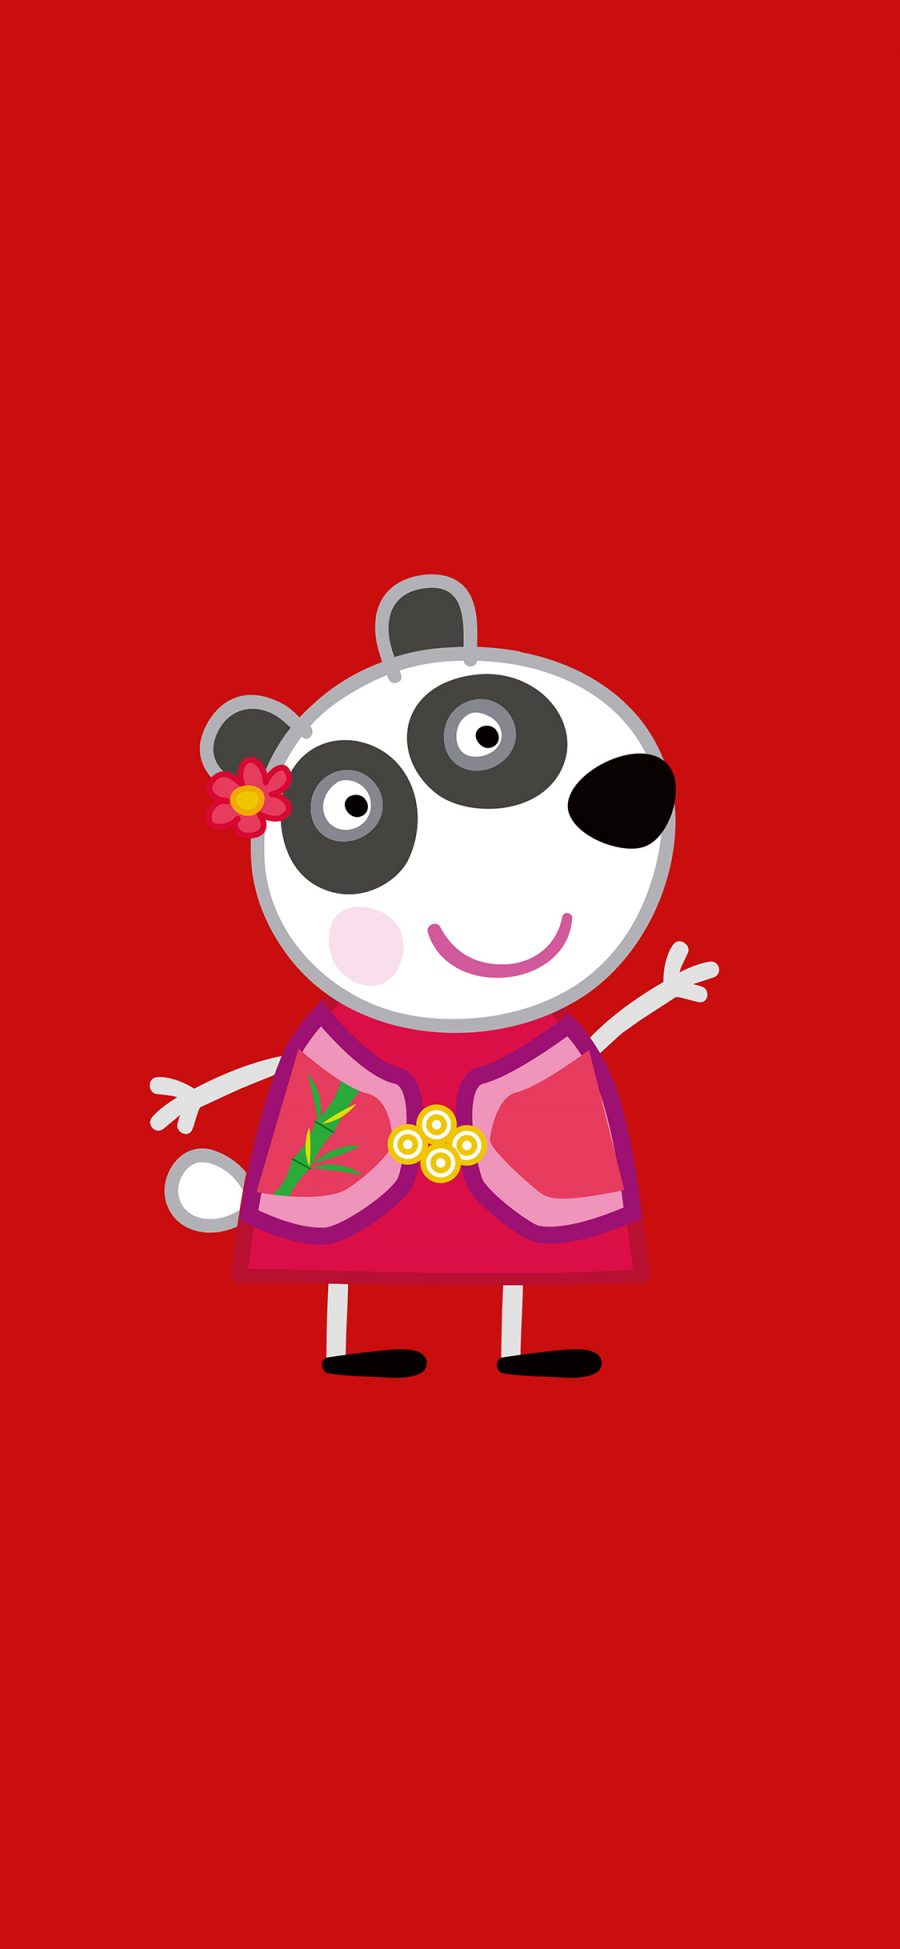 [2436×1125]小猪佩奇 红色 动画 熊猫 苹果手机动漫壁纸图片